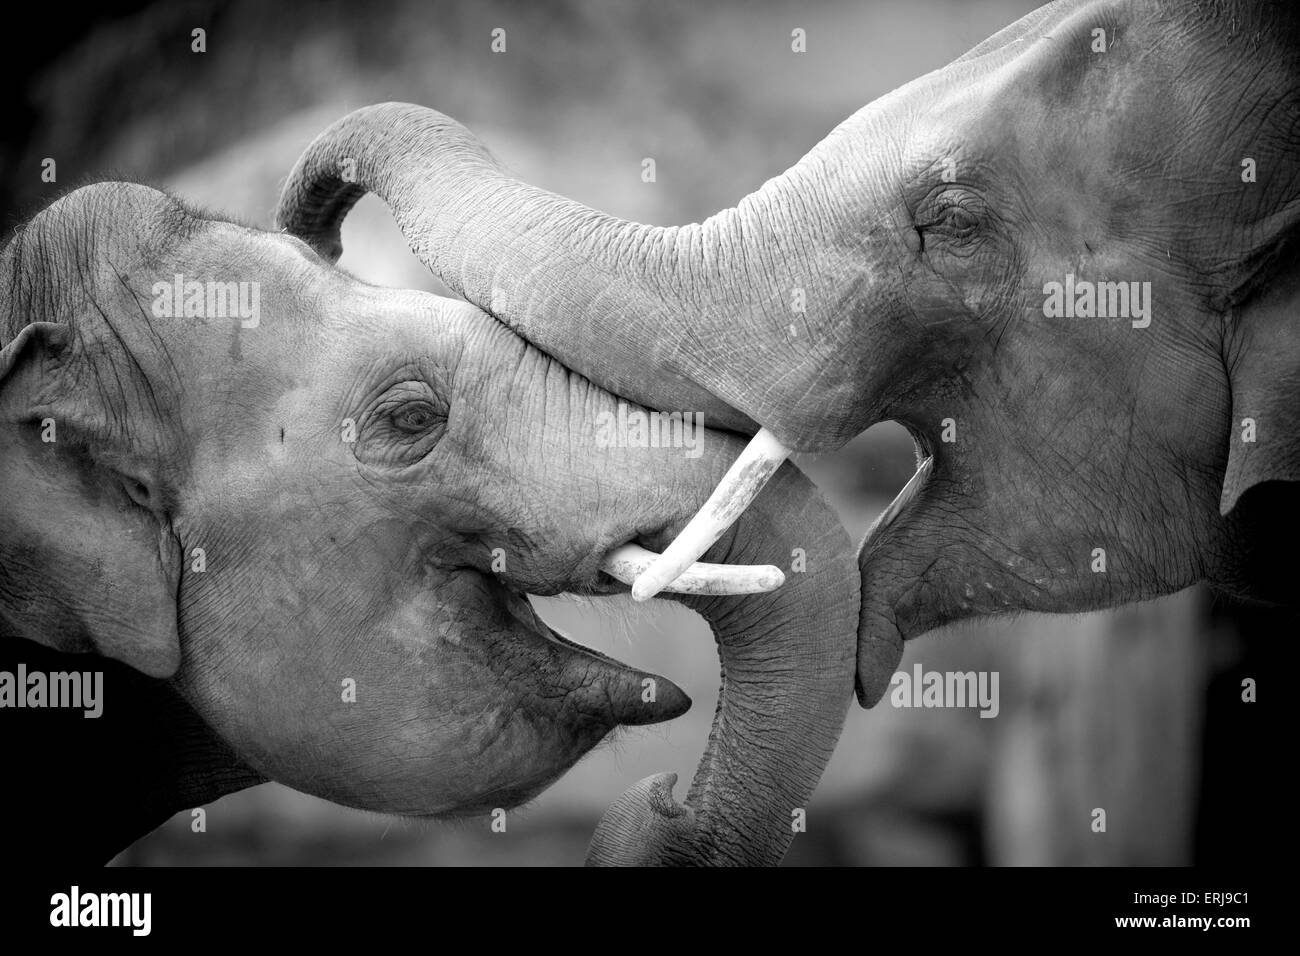 elefantes asiáticos Foto de stock